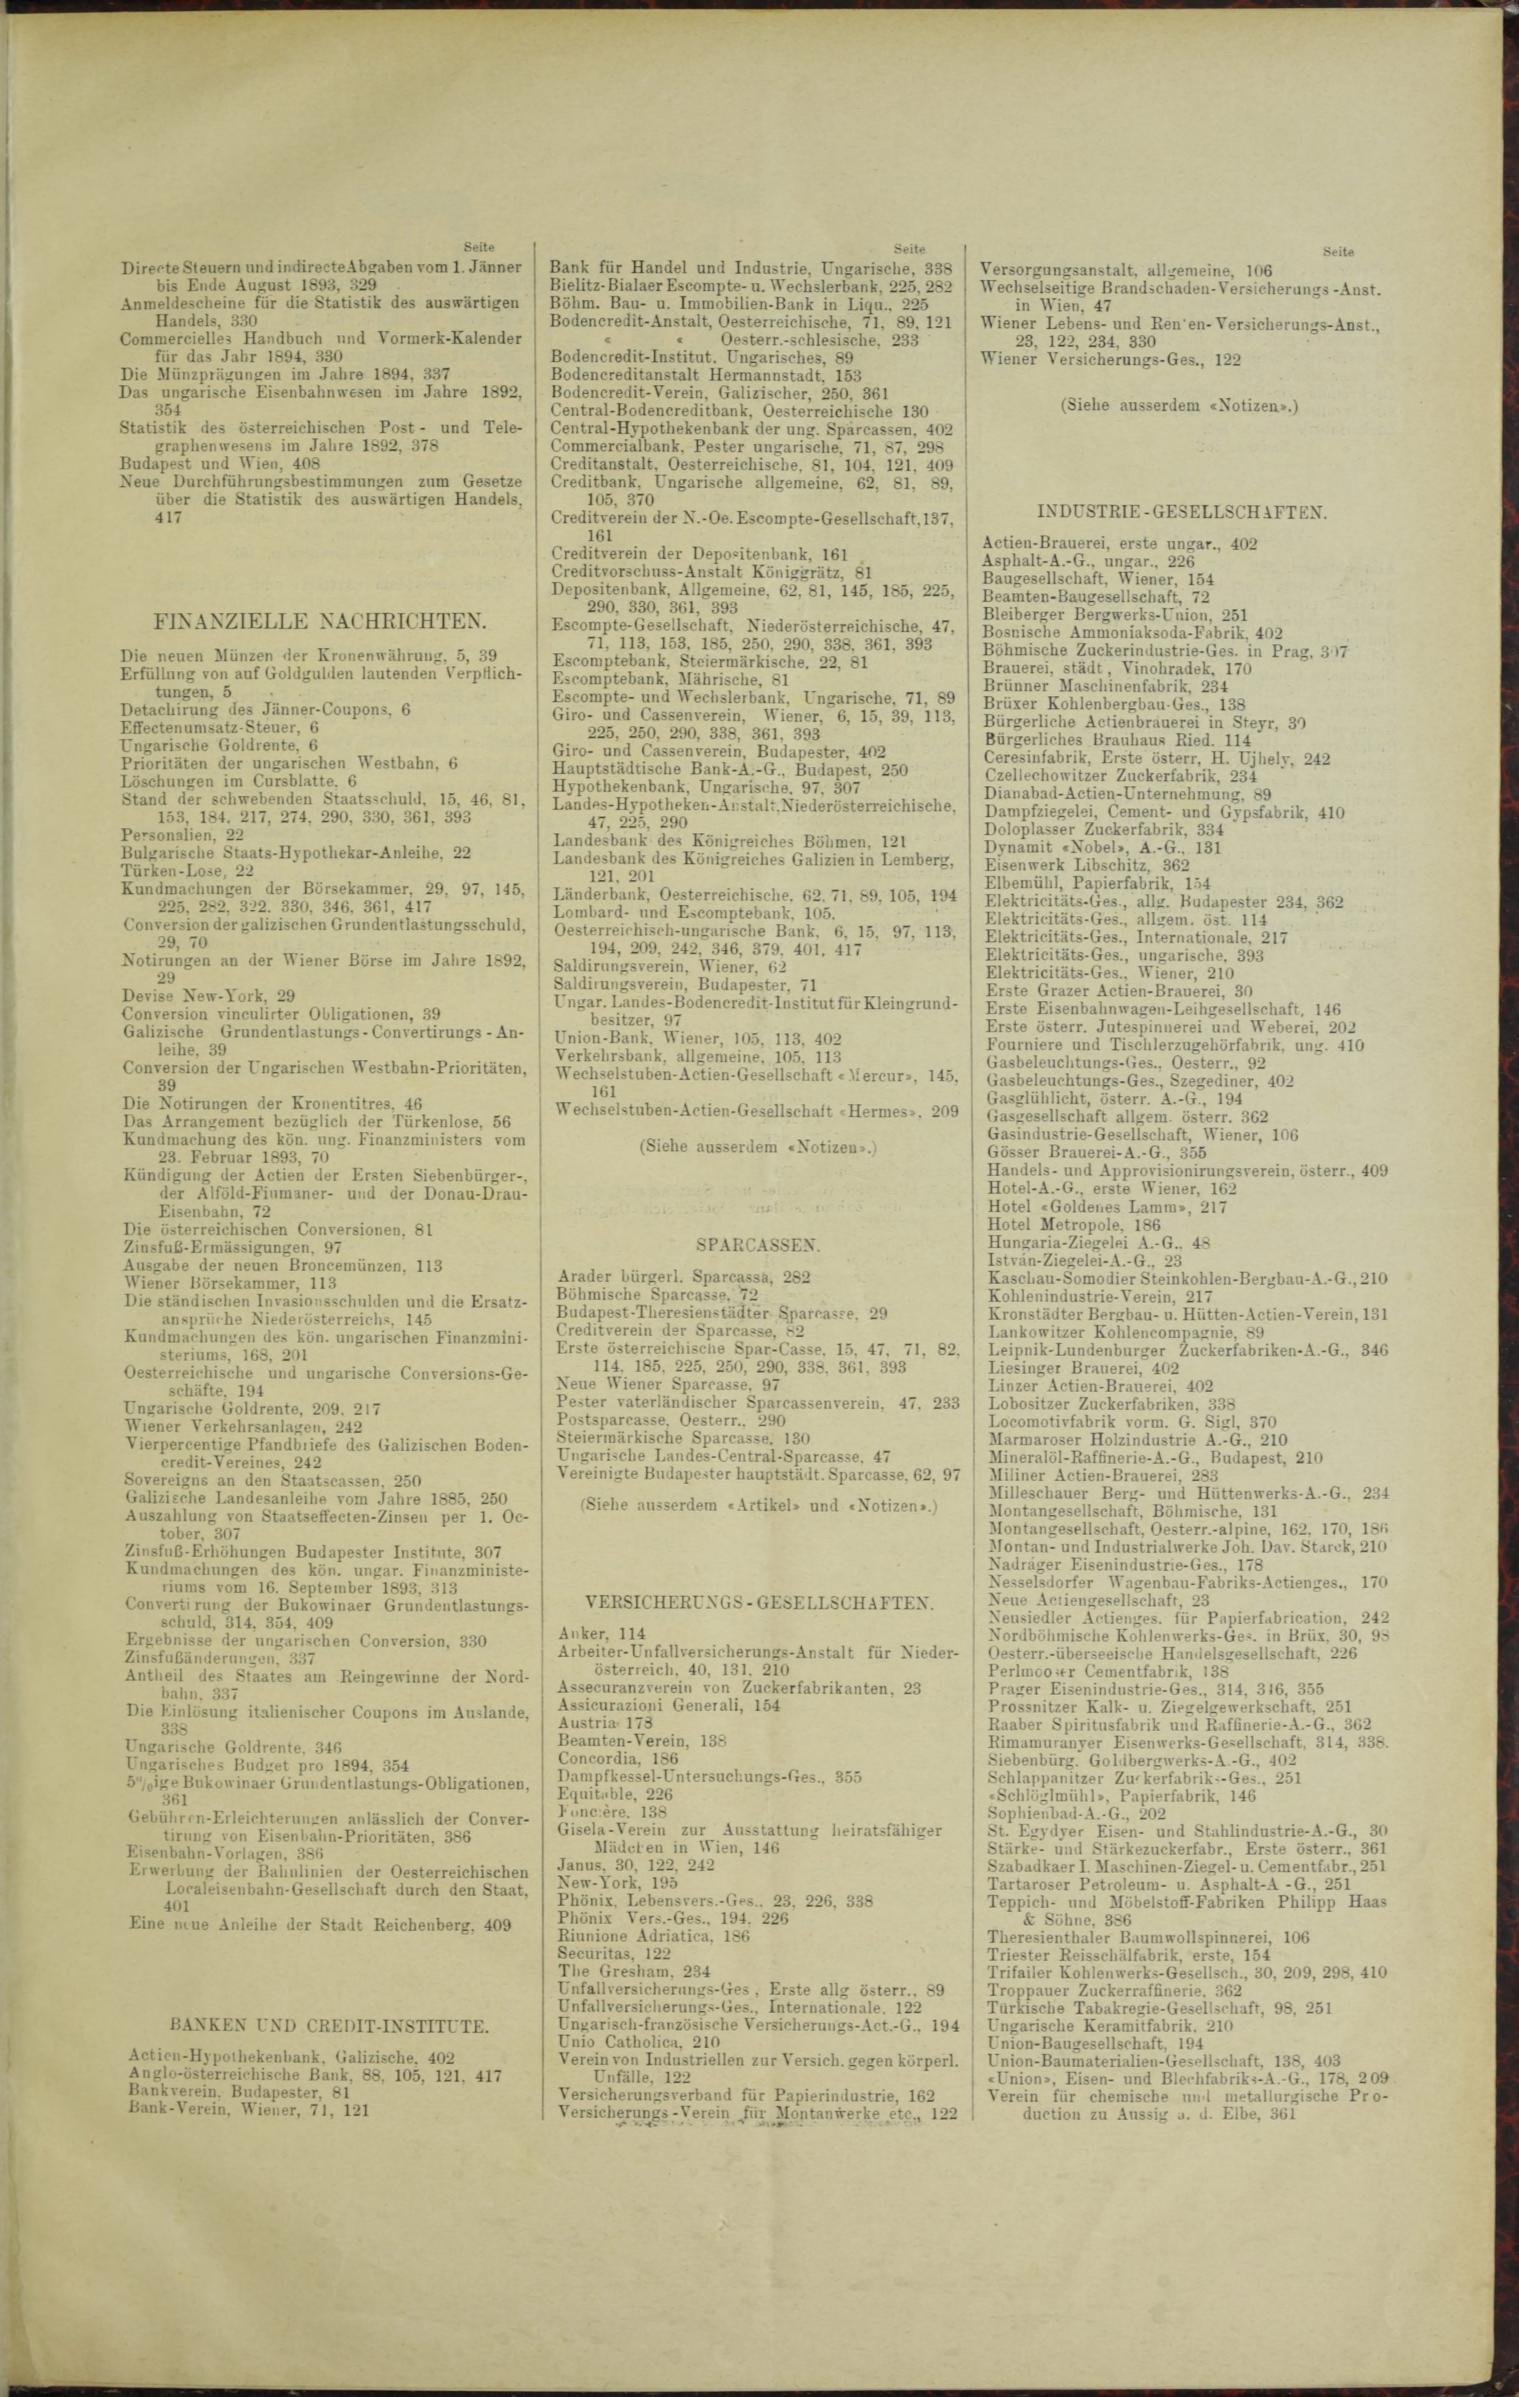 Der Tresor 09.02.1893 - Seite 11